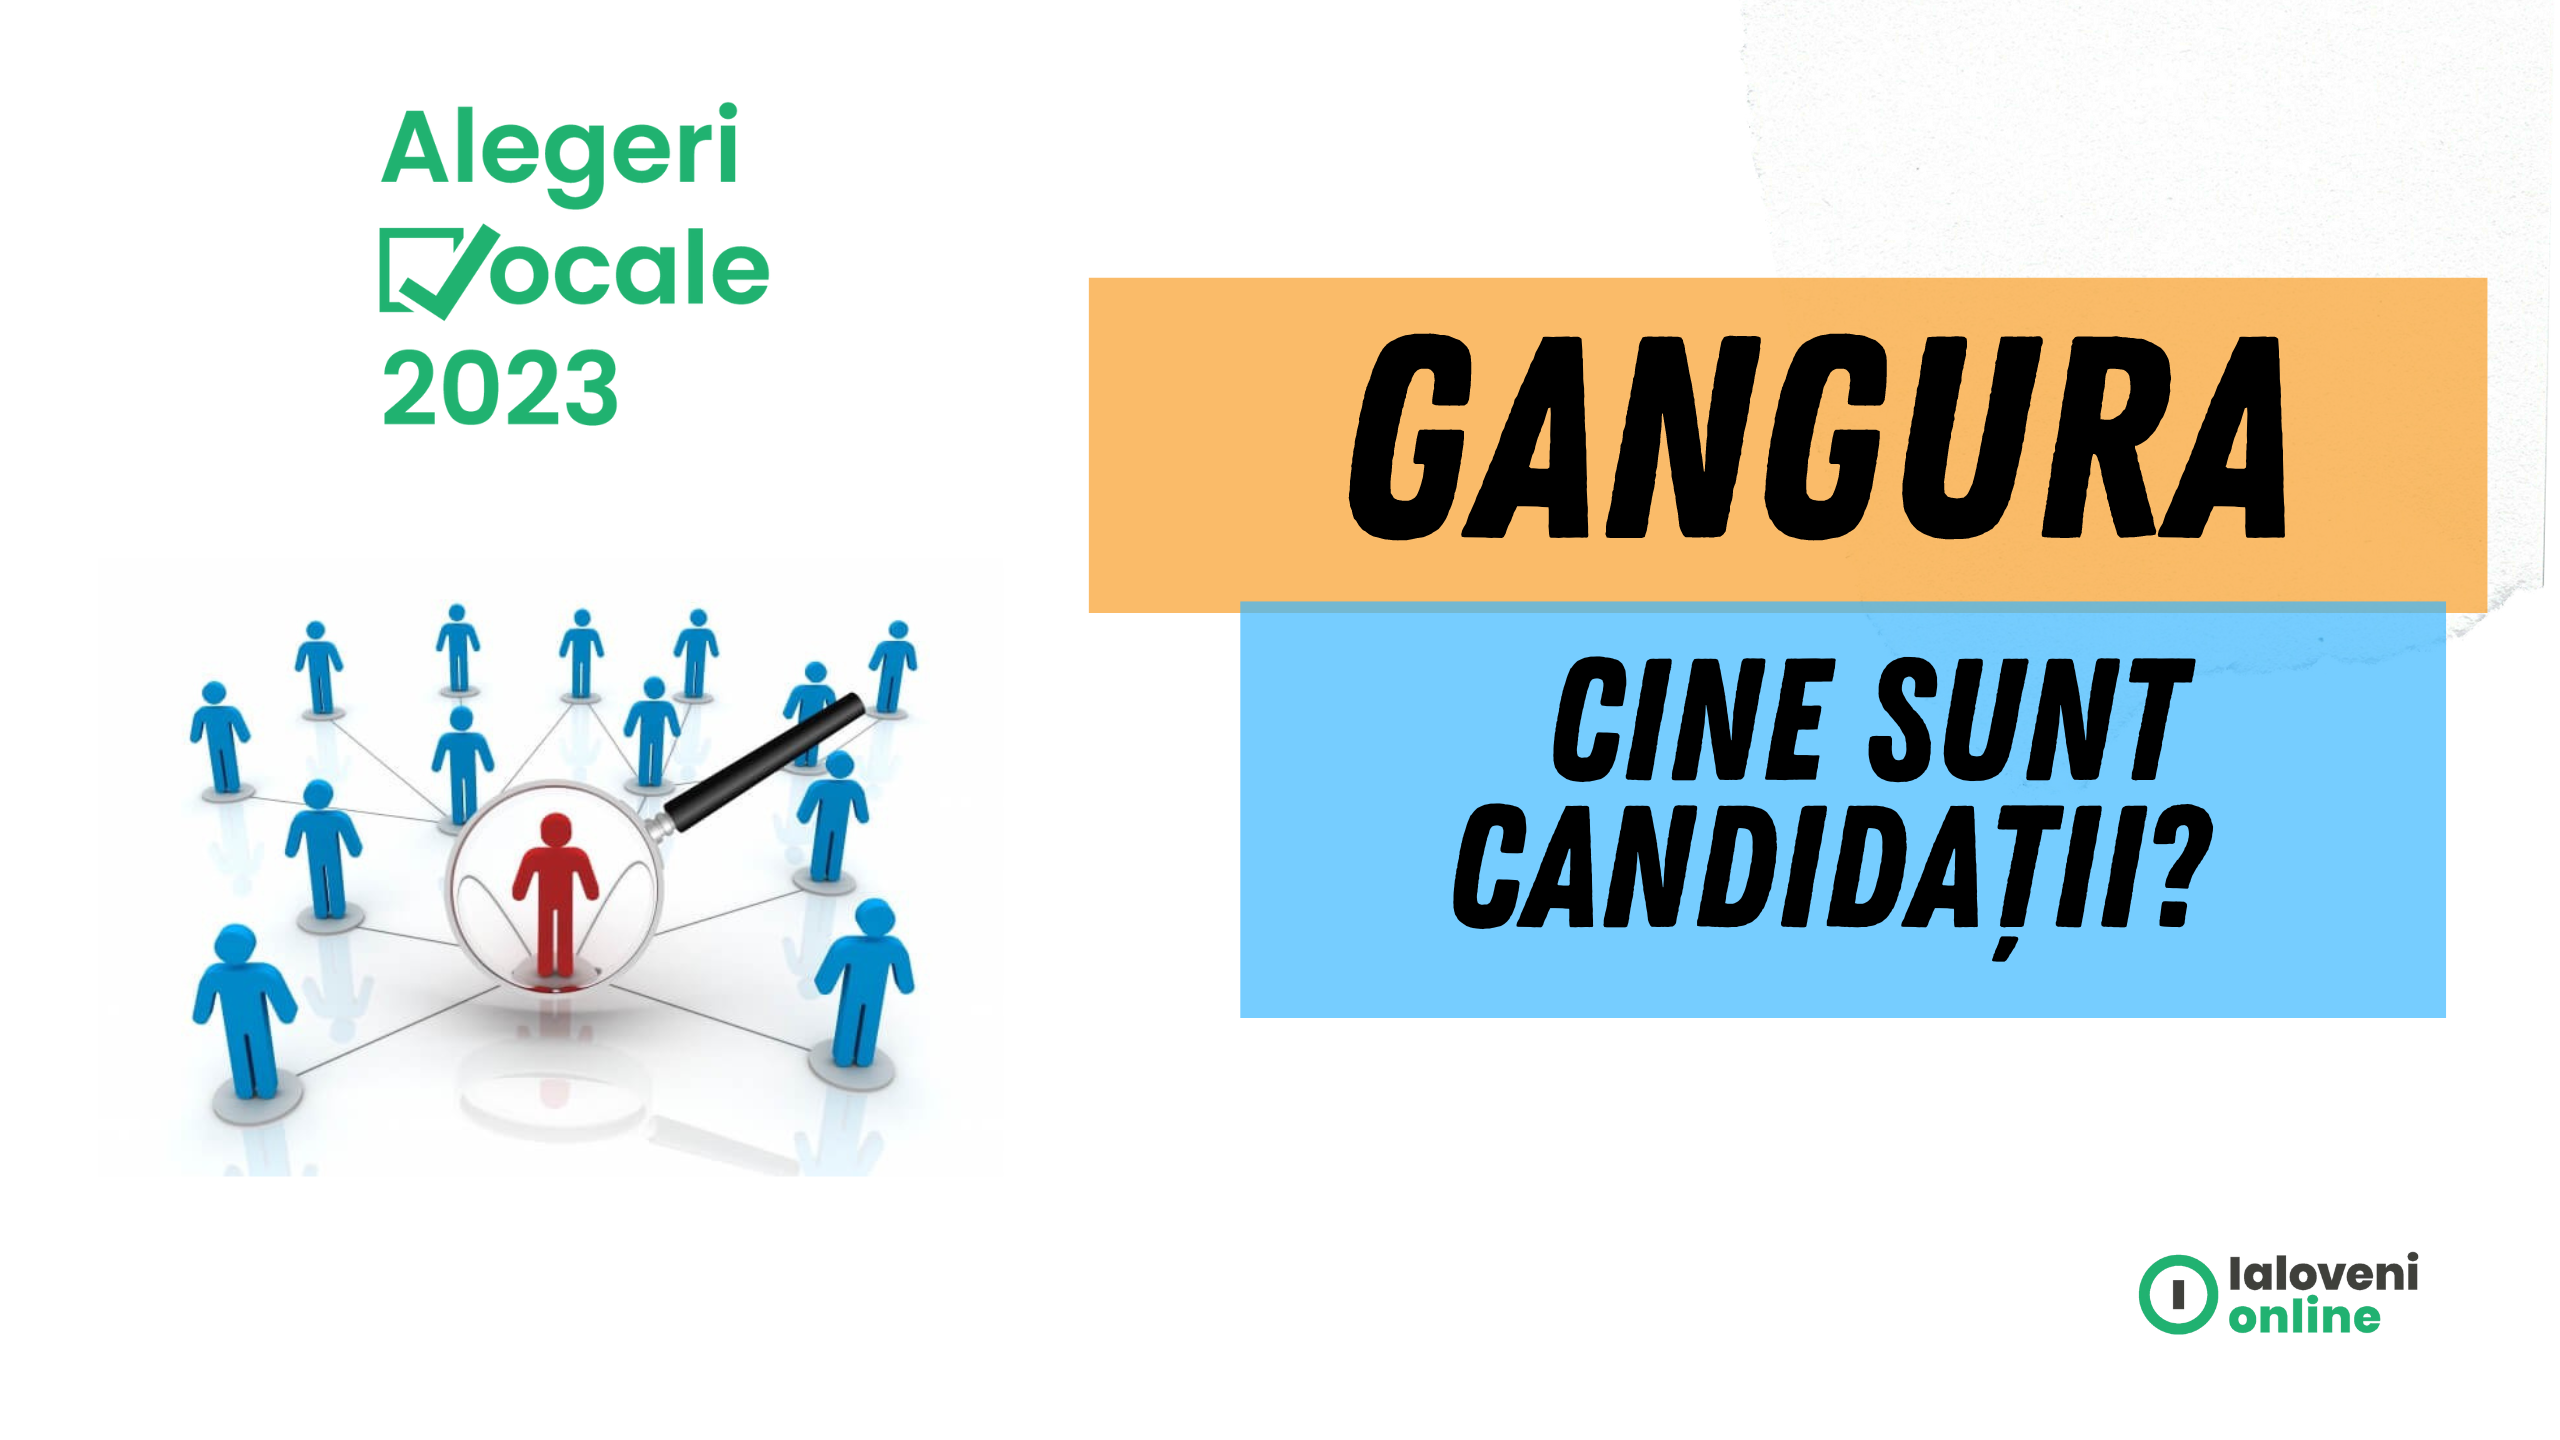 Alegeri locale Gangura 2023